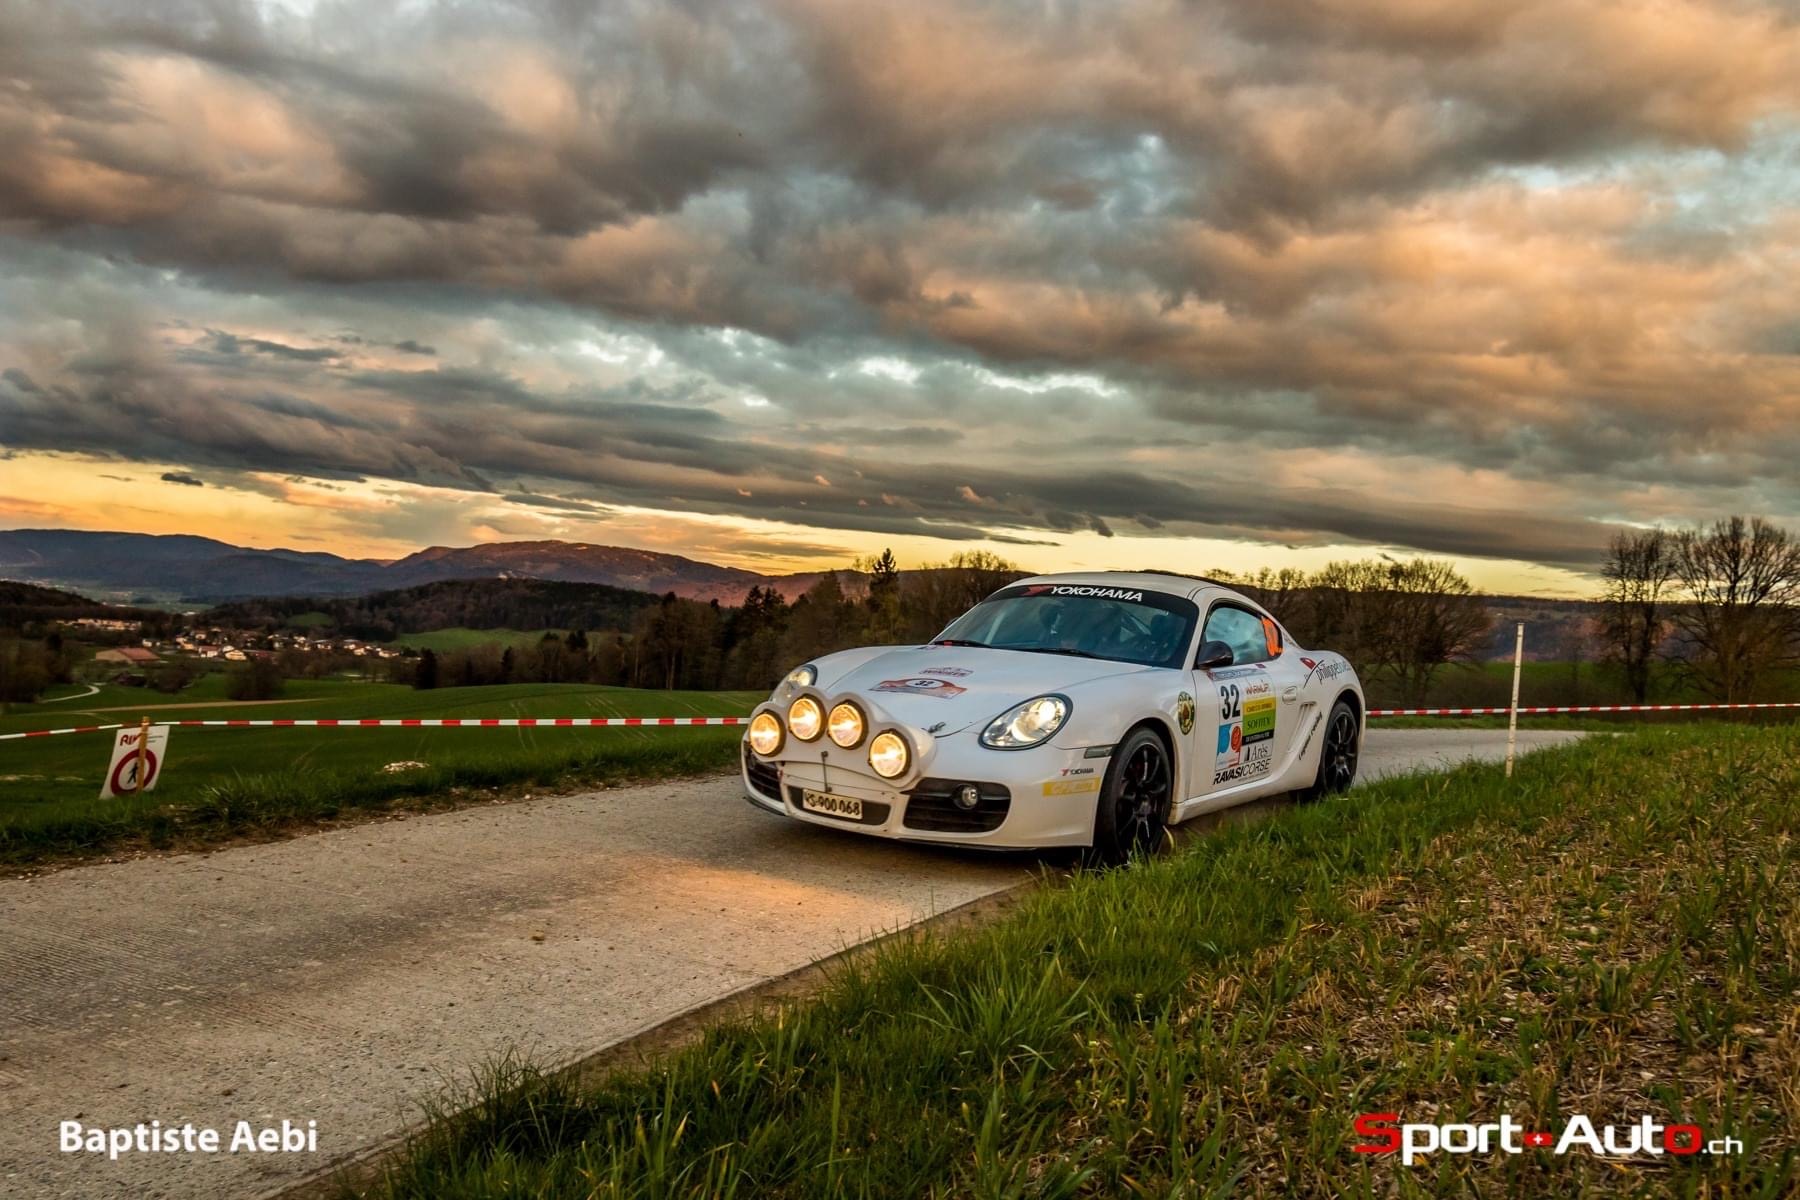 Entretien avec William Winiger – "J'ai combattu pour homologuer cette Porsche!"